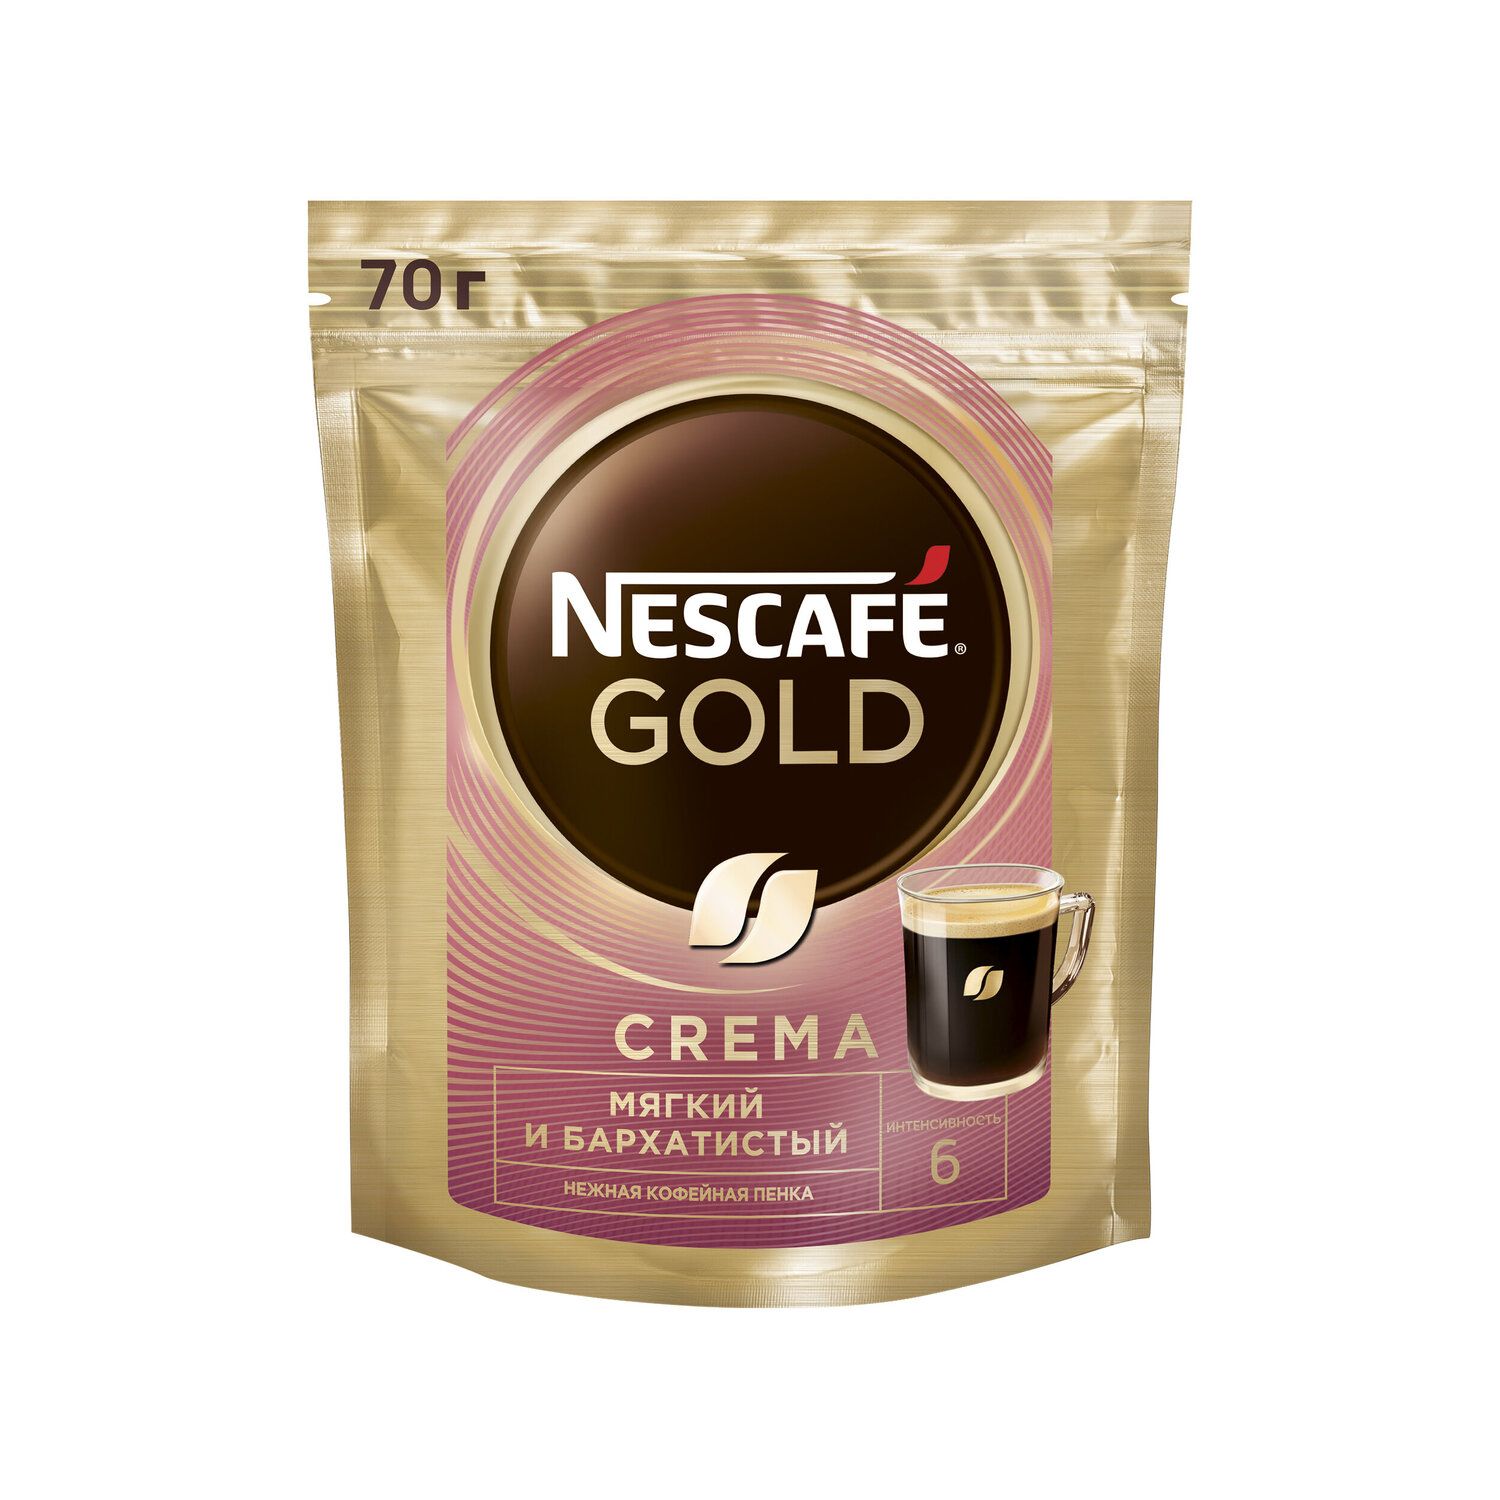 Нескафе крема купить. Кофе Нескафе crema. Кофе Nescafe Gold crema. Кофе Нескафе Голд крема. Кофе Nescafe Gold крема растворимый.